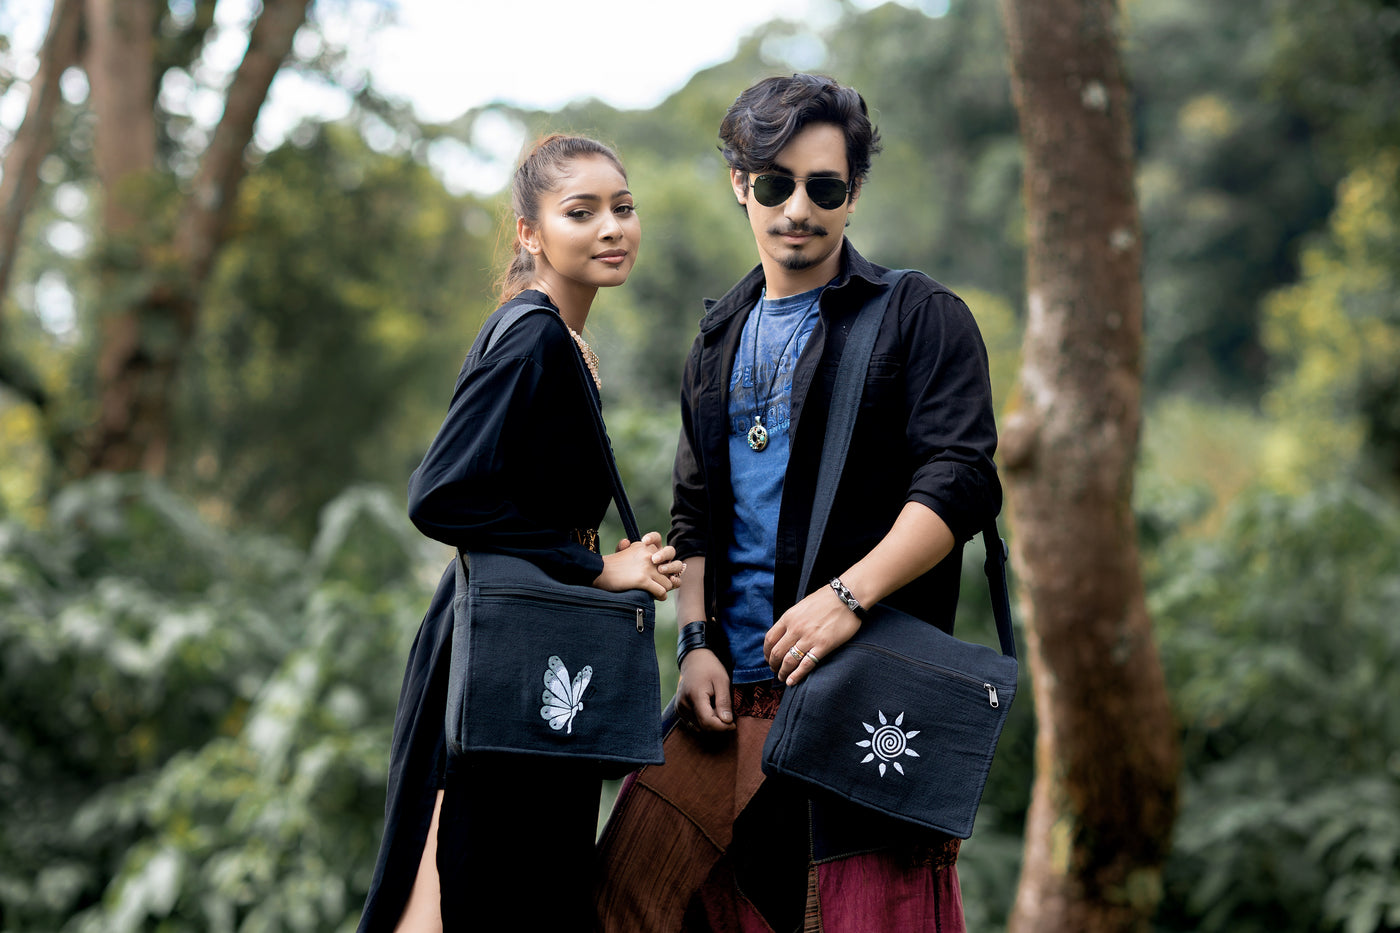 Bheri Black Embroidered Side Bag